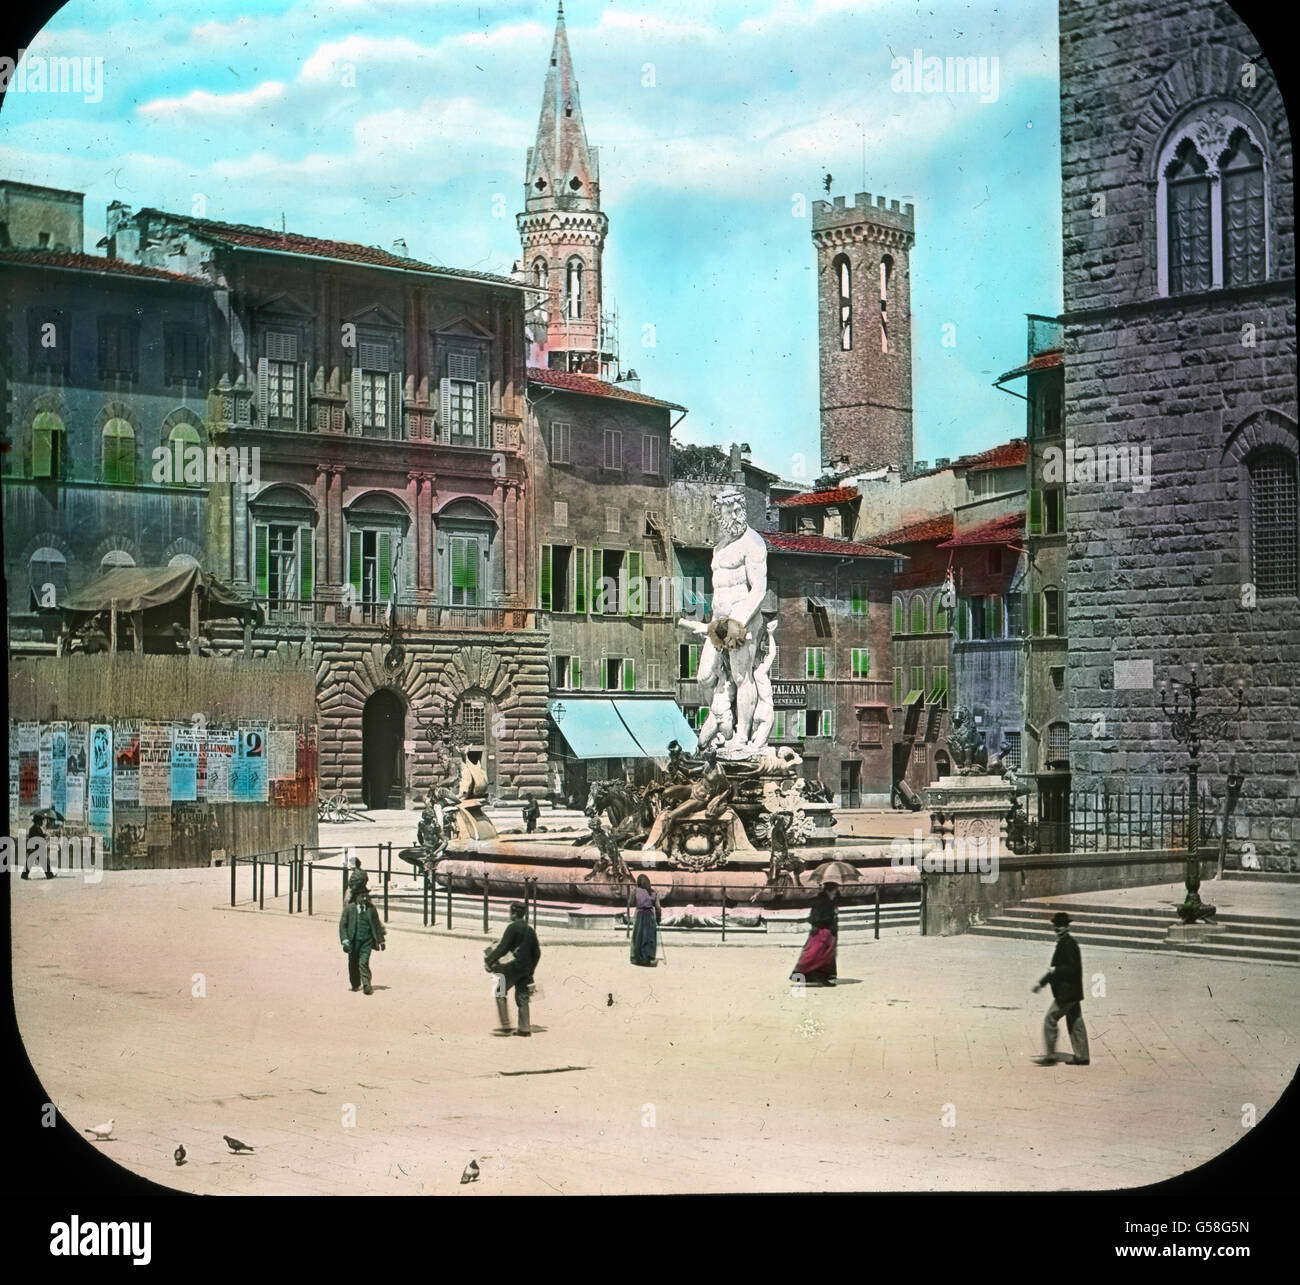 Das Herz von Florenz ist die Piazza della Signoria, das berühmte Forum der Republik, das, wie kaum ein anderer Platz in Italien, noch das Gepräge seiner großen Zeit bewahrt hat. Hier wurden die großen Volksversammlungen abgehalten, hier machten die Empörungen sich Luft, hier wurden Freudenfeste gefeiert, auch Parteikämpfe ausgefochten. Auf diesem Platze wurde am 23.Mai 1498 der schwärmerische Volksprediger, der Dominikaner Savonarola, auf dem Scheiterhaufen verbrannt. Eine Bronzeplatte mit seinem Bilde zeigt vor dem Neptunsbrunnen die Stelle, wo der Scheiterhaufen aufloderte. travel, Italy, Fl Stock Photo